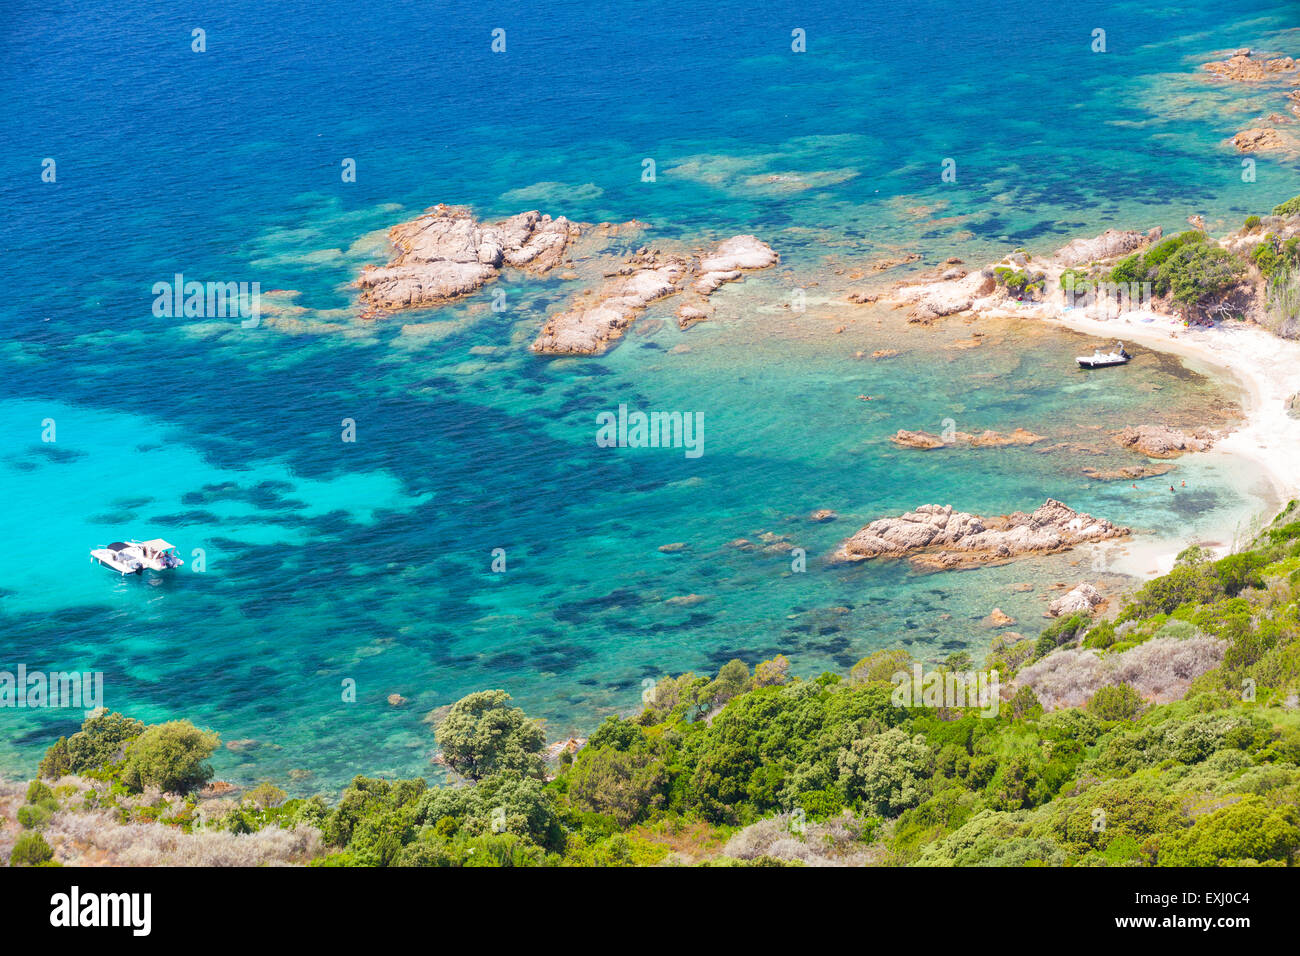 La isla de Córcega, Cupabia golfo. El paisaje costero con un pequeño bote a motor, cerca de la playa rocosa salvaje Foto de stock